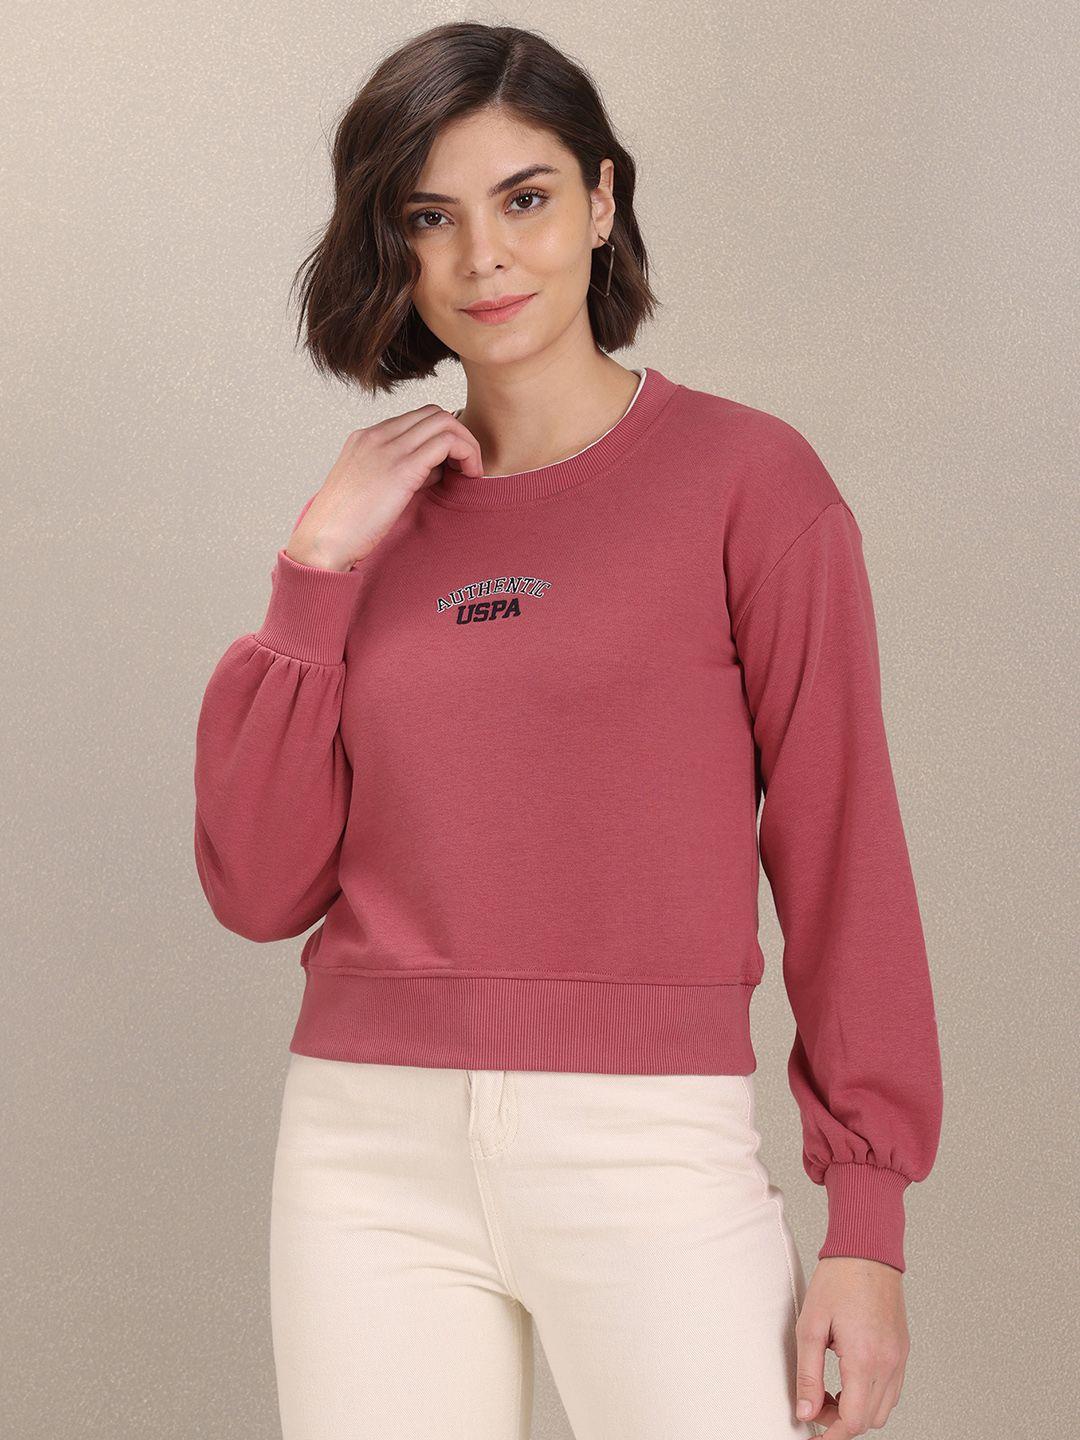 u-s-polo-assn-women-women-dusty-pink-solid-sweatshirt